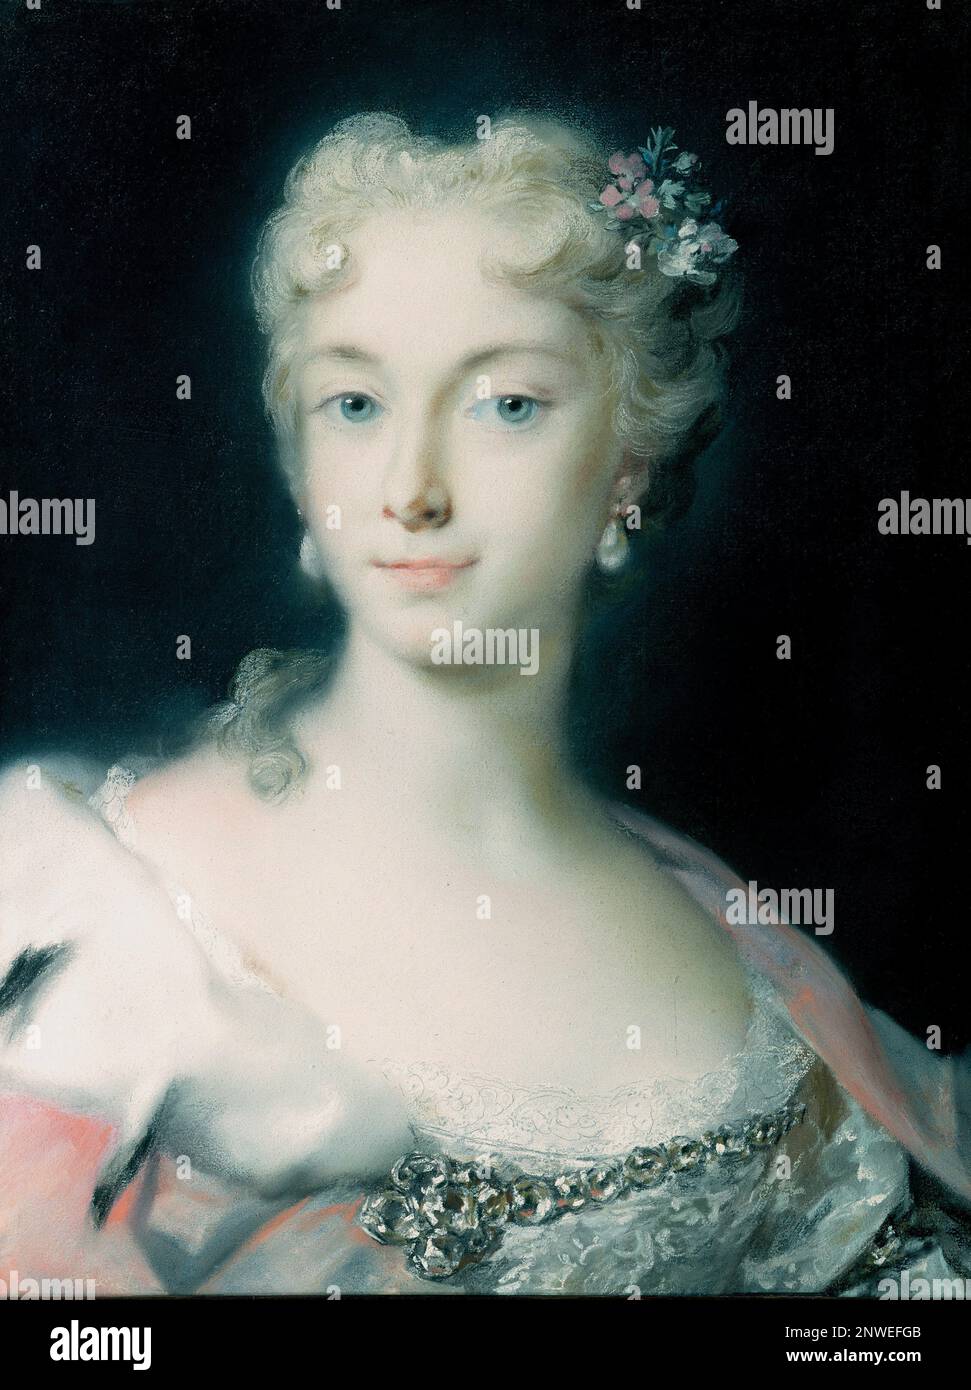 Maria Theresa, Maria Theresa Walburga Amalia Christina (1717 – 1780) gouvernante des dominons des Habsbourg, elle était la duchesse de Lorraine, la Grande duchesse de Toscane et l'impératrice romaine sainte. Peinture de Rosalba Carriera Banque D'Images